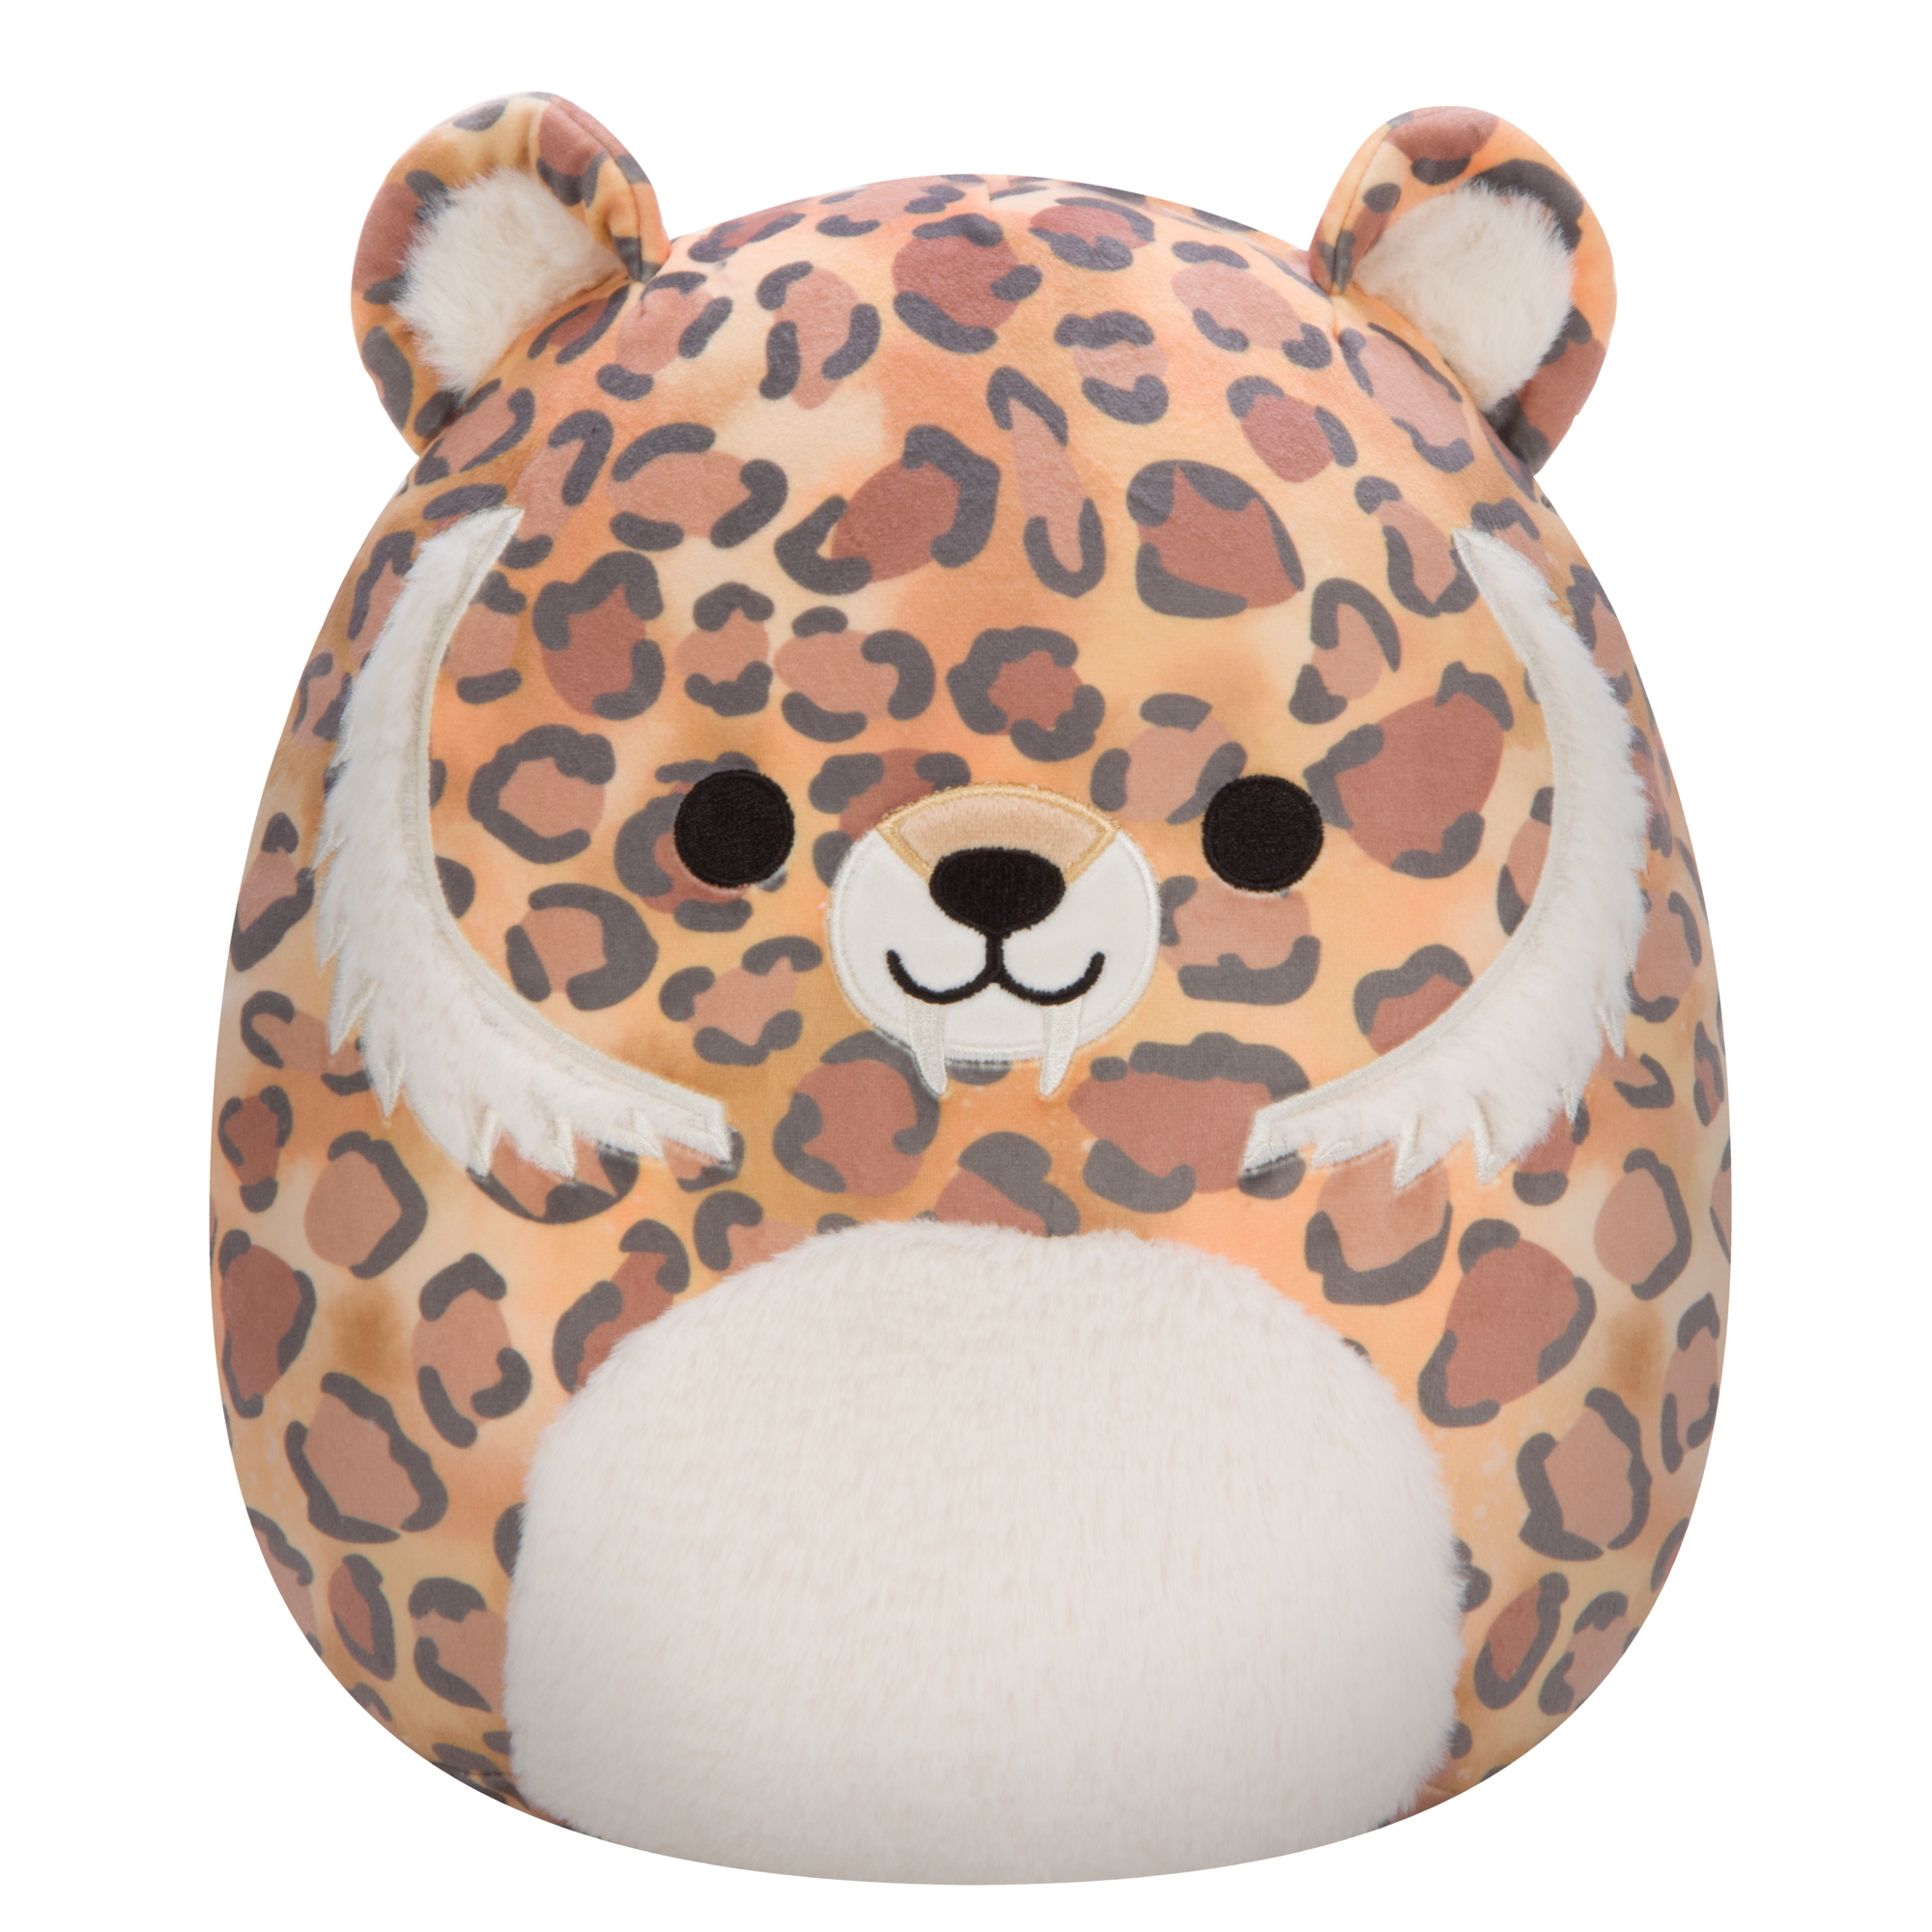 Акция на М'яка іграшка Squishmallows Шаблезубий тигр Чері 31 см (SQJW22-12TG-12) от Будинок іграшок